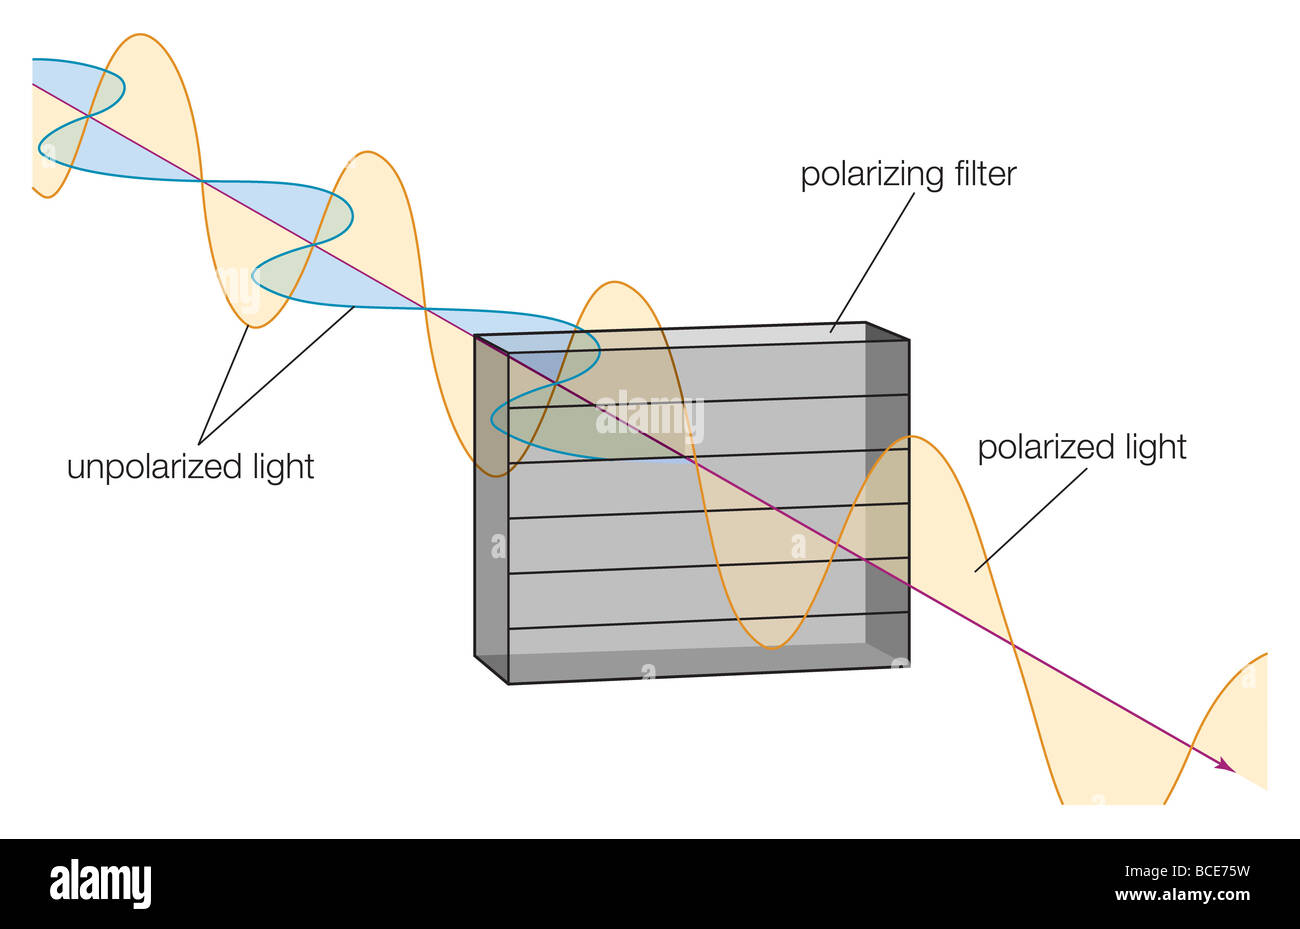 Las ondas de luz que coinciden con la orientación de las moléculas de un filtro polarizador son absorbidas, reduciendo la intensidad de la luz. Foto de stock